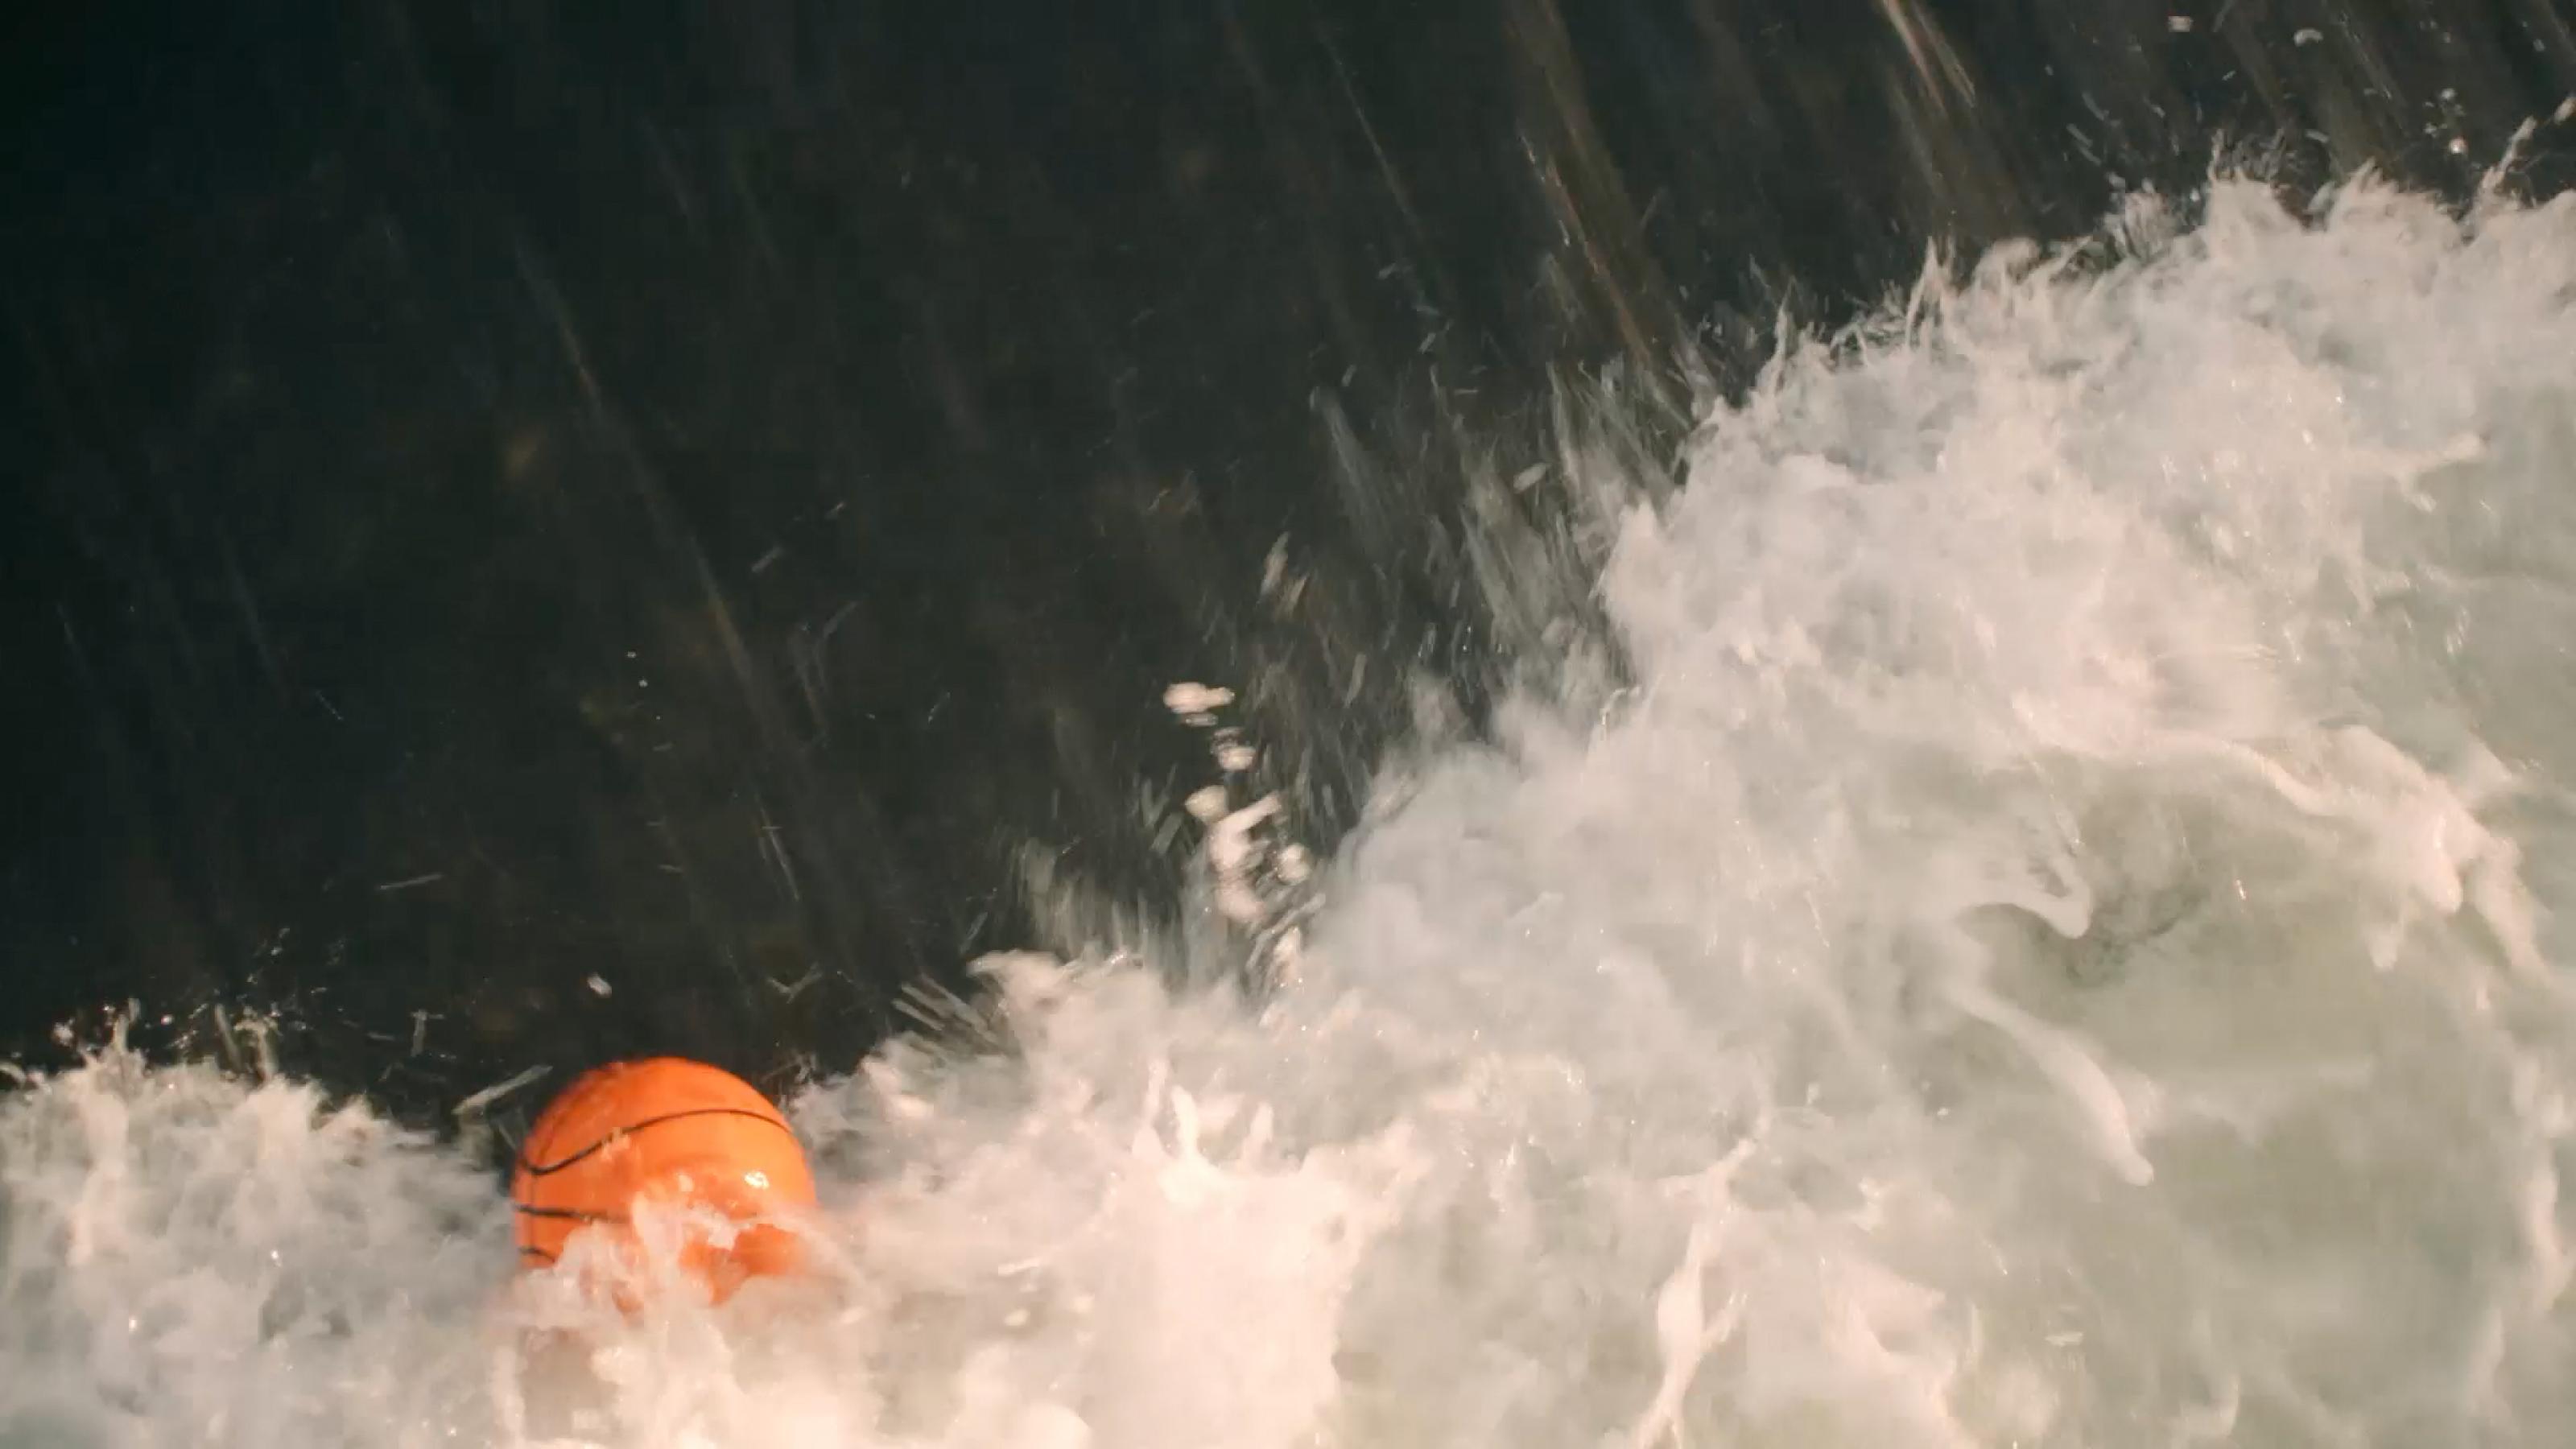 Ein orangefarbener Ball in der Gischt eines Flusses.